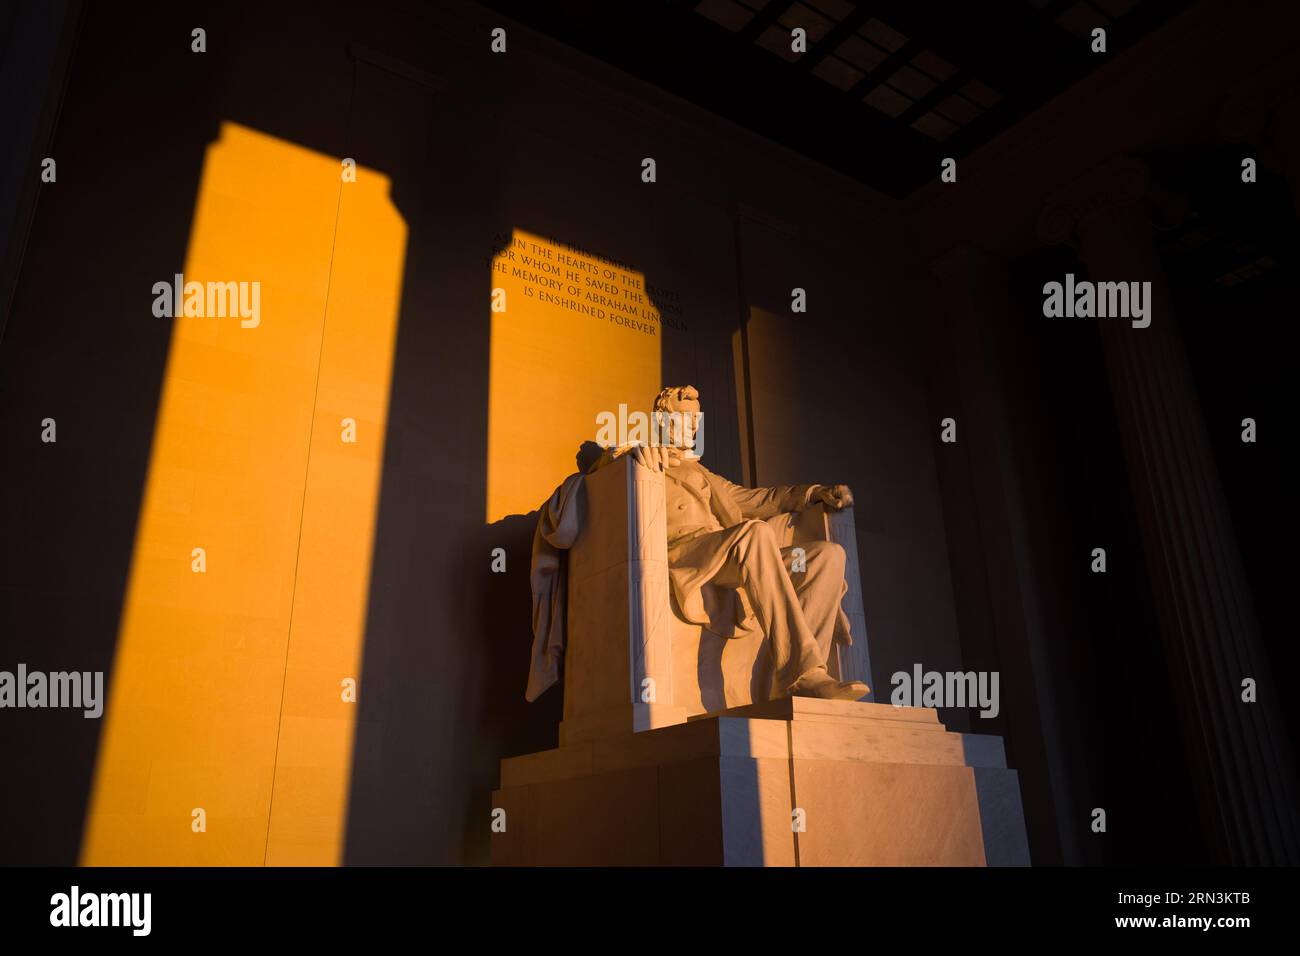 WASHINGTON DC, Vereinigte Staaten – die Statue des Lincoln Memorial, die während der Frühlingssonnenwende vom goldenen Licht des Sonnenaufgangs erleuchtet wird, strahlt ein warmes Licht über das historische Denkmal. Dieses besondere Sonnenereignis unterstreicht die ikonische Hommage an den 16. US-Präsidenten und unterstreicht Abraham Lincolns Rolle in der Geschichte der Nation. Stockfoto